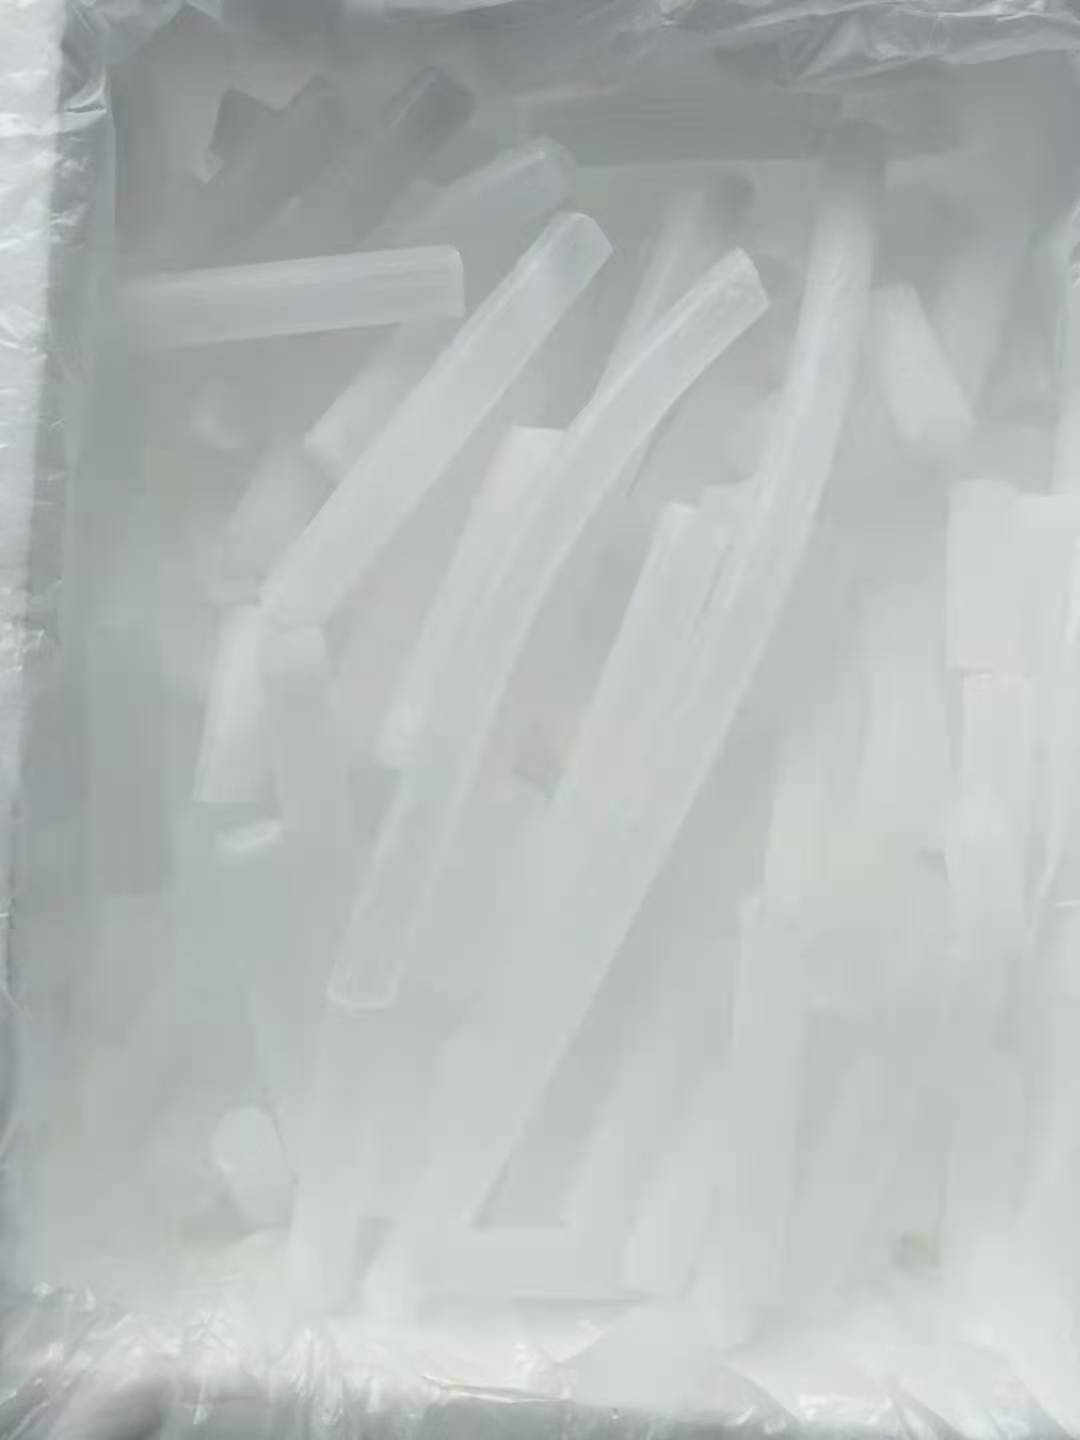 贵州冷链物流干冰厂家供应商、冷链物流干冰价格多少钱【贵阳云岩聚丰干冰经营部】图片